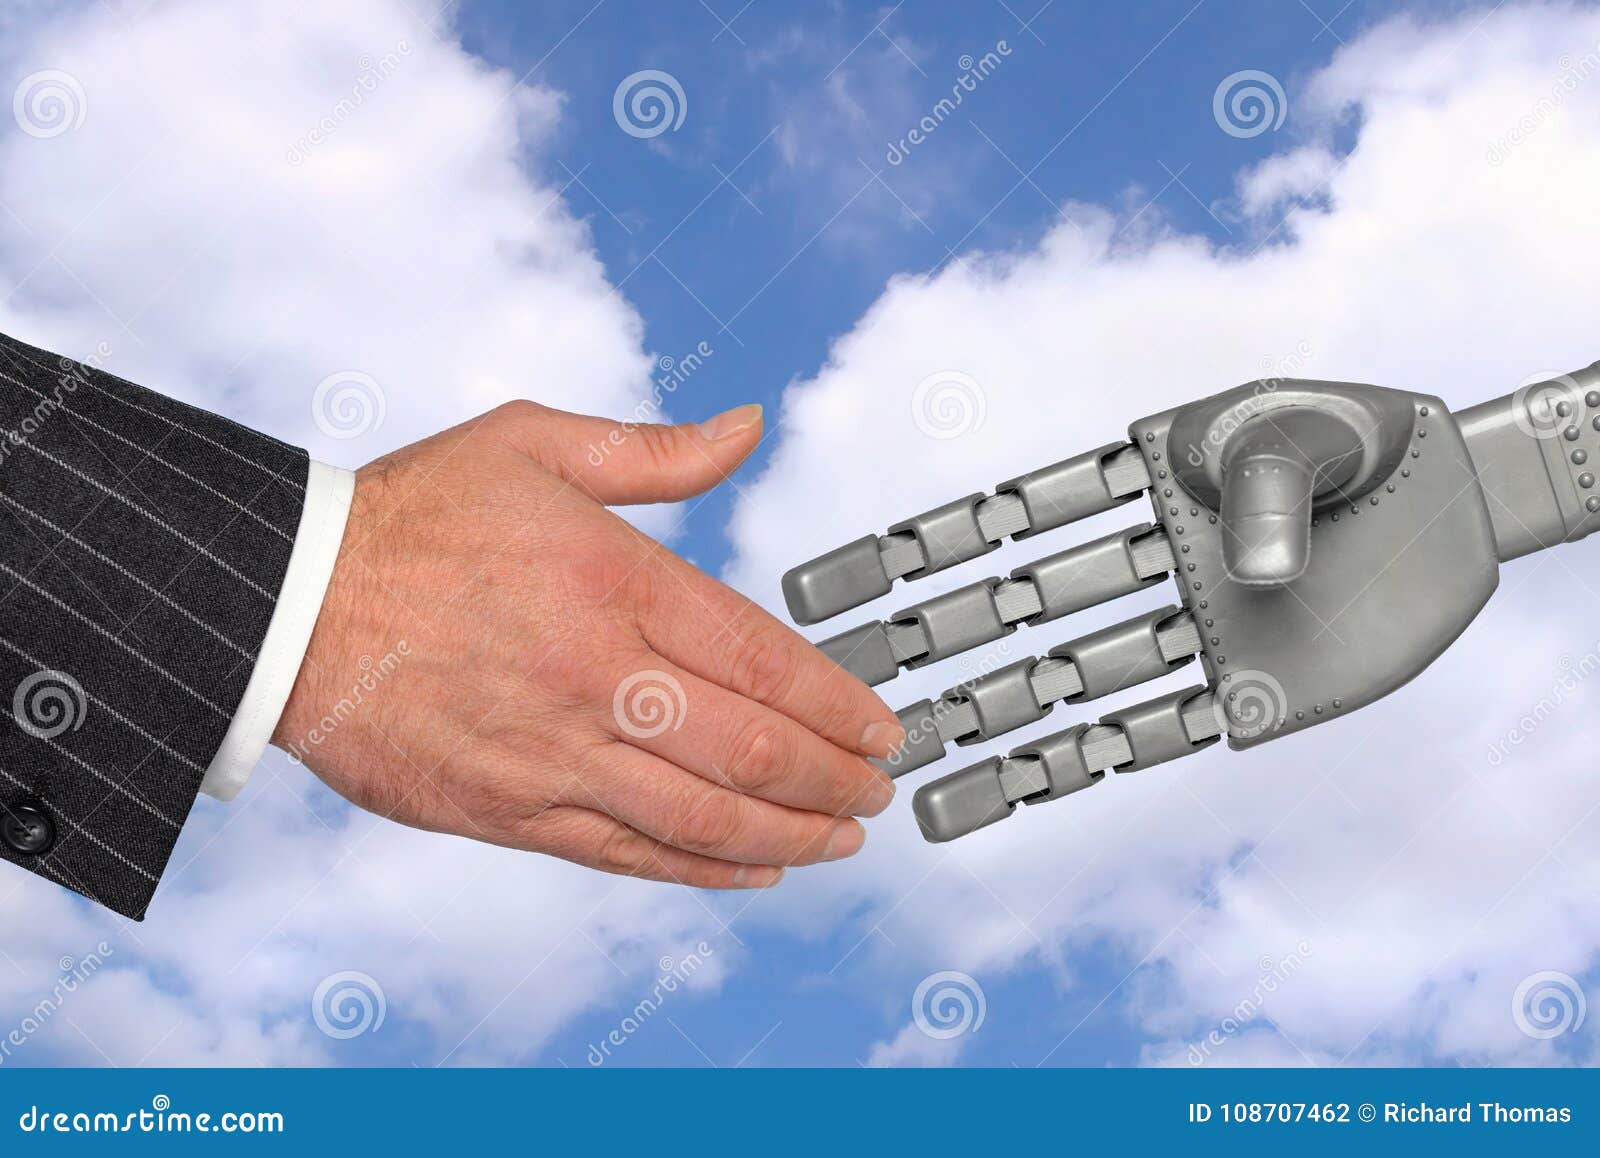 Handskakning för möteteknologirobot. Handskakning mellan en affärsman och en robotic hand, ett möte med teknologibegrepp